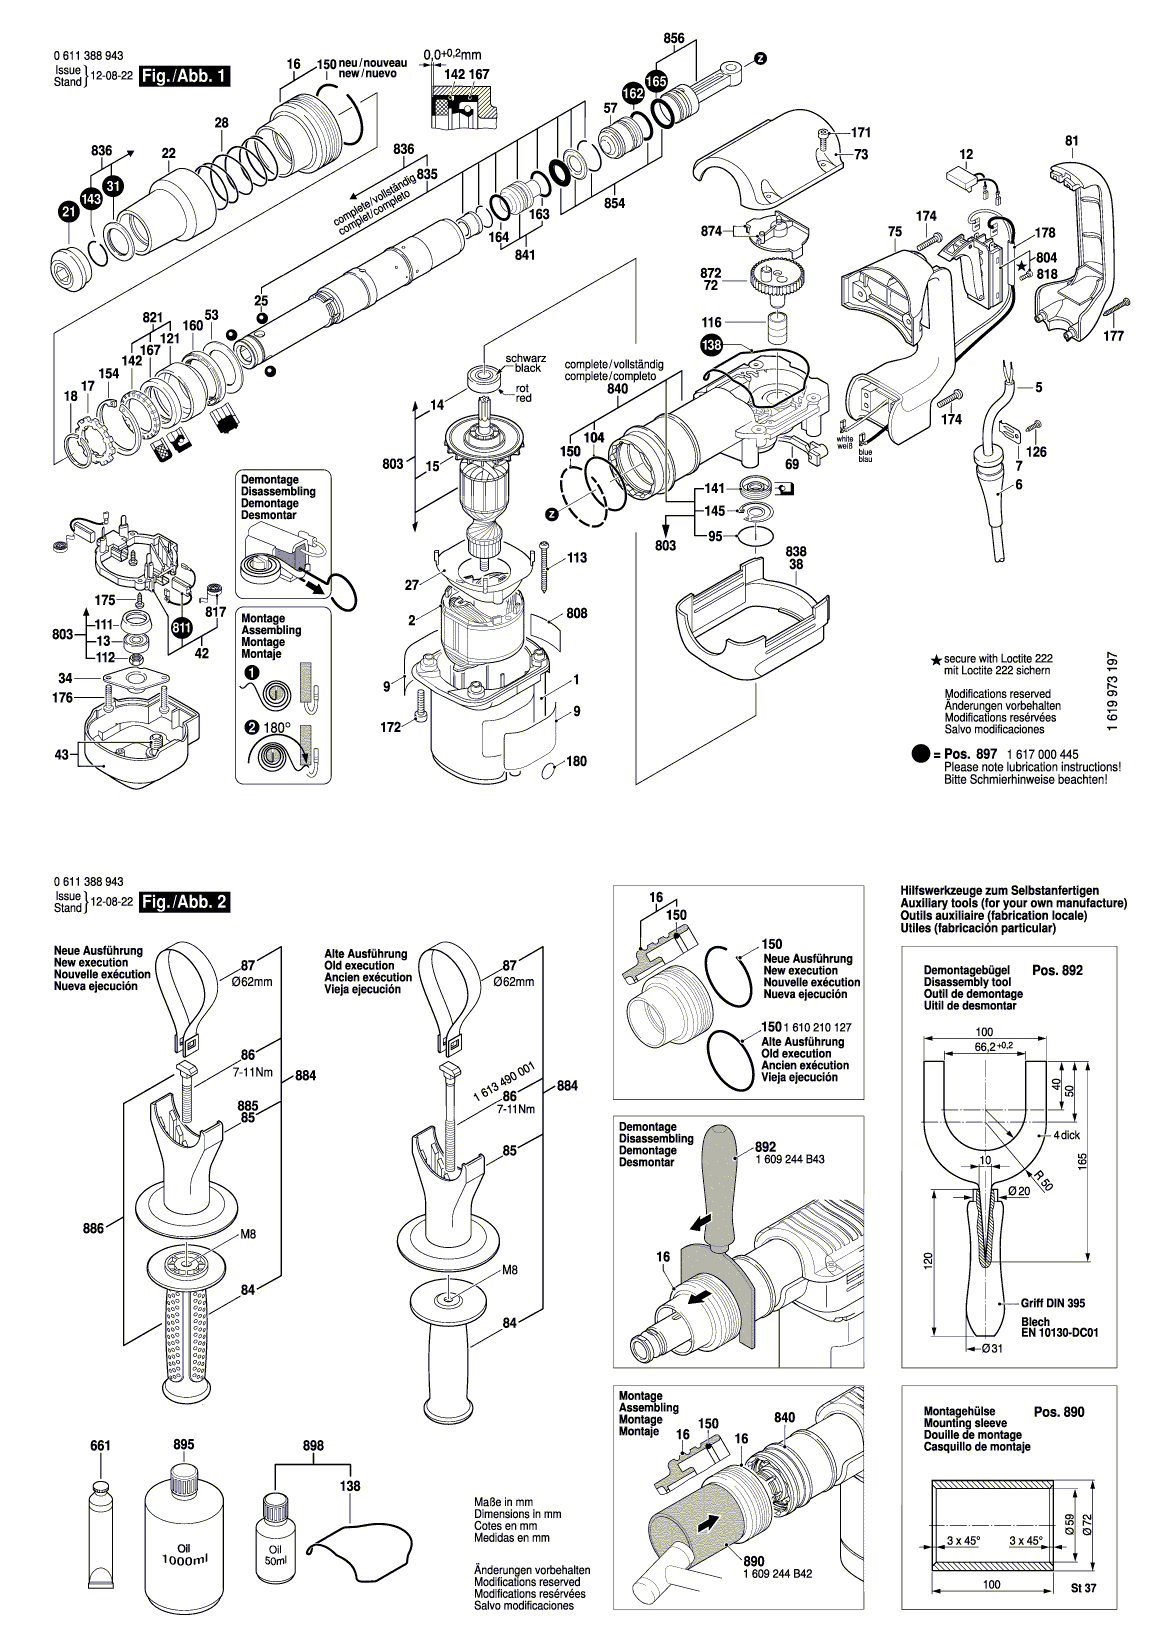 Схема на Відбійний молоток Bosch GSH 388 X (0 611 388 904)